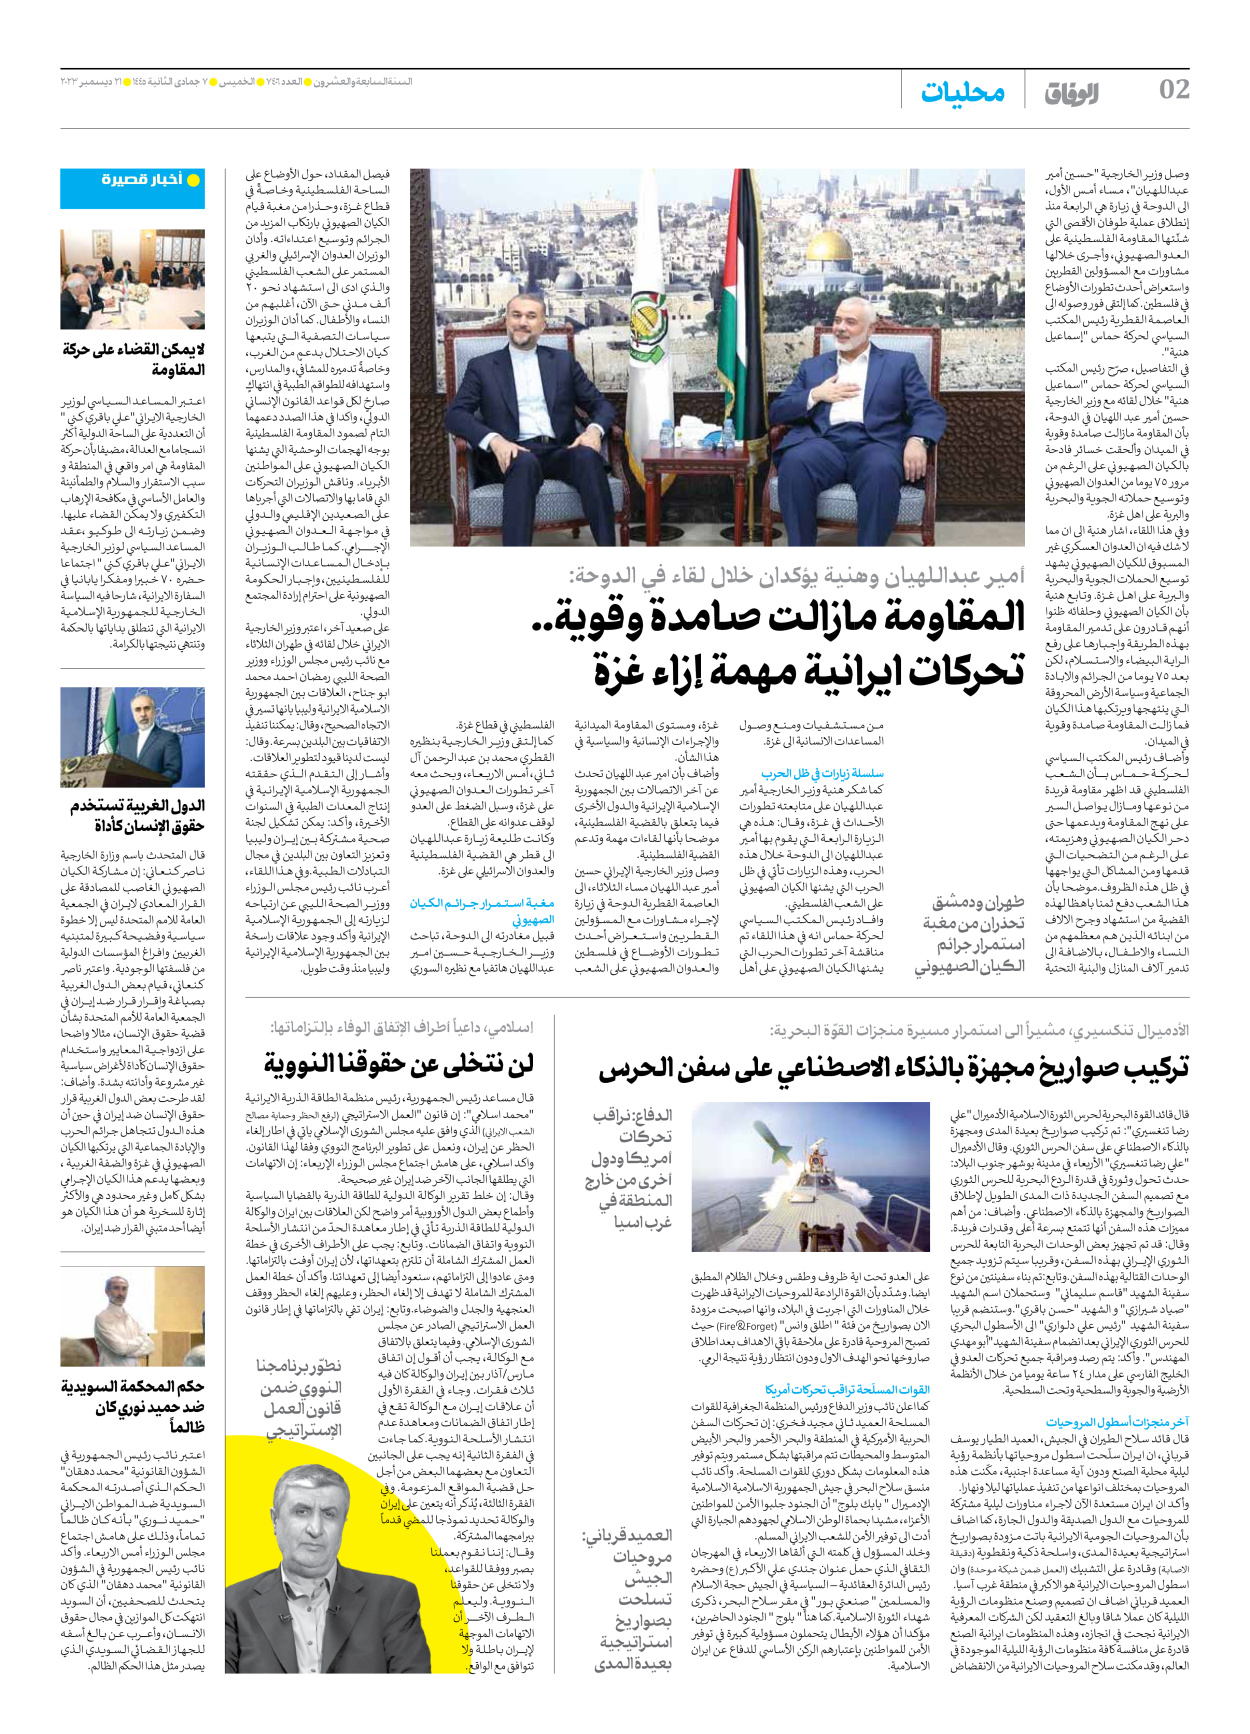 صحیفة ایران الدولیة الوفاق - العدد سبعة آلاف وأربعمائة وستة - ٢١ ديسمبر ٢٠٢٣ - الصفحة ۲